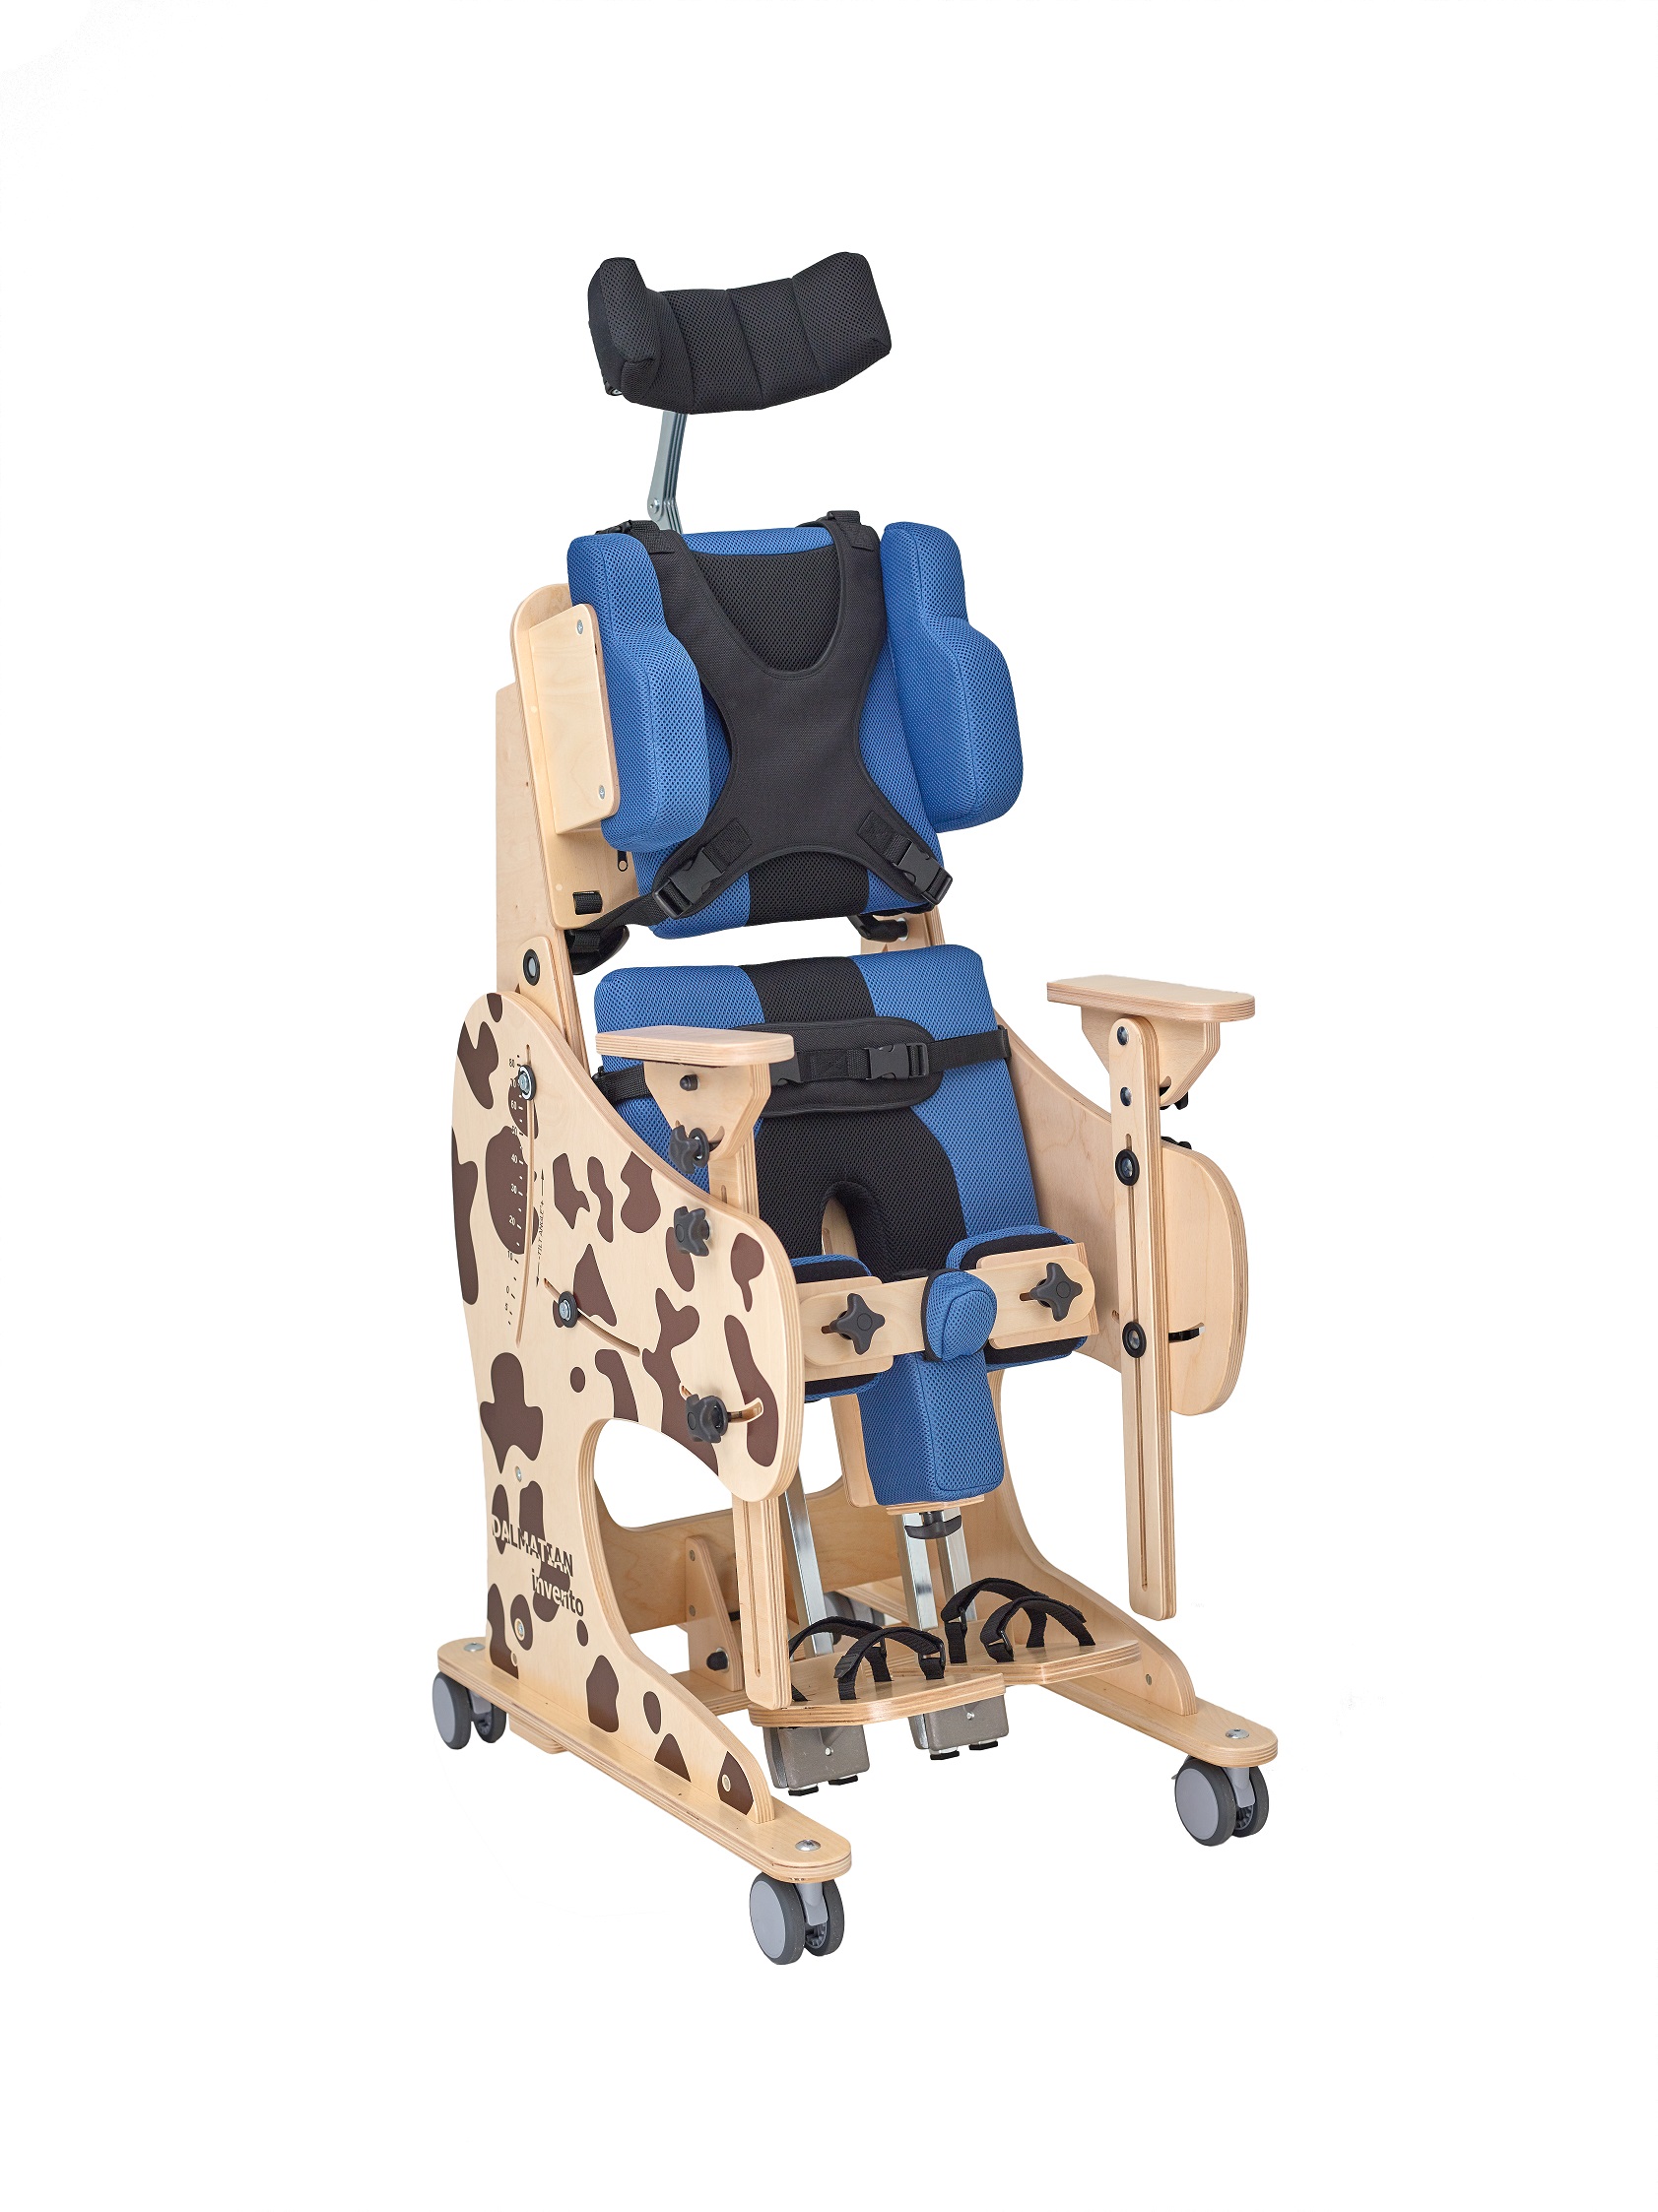 Сиденье для детей дцп. Опора вертикализатор для детей с ДЦП. Реабилитационное кресло AKCESMED Зебра Инвенто. Вертикализатор для инвалидов детей ДЦП. Вертикализатор Далматинчик.